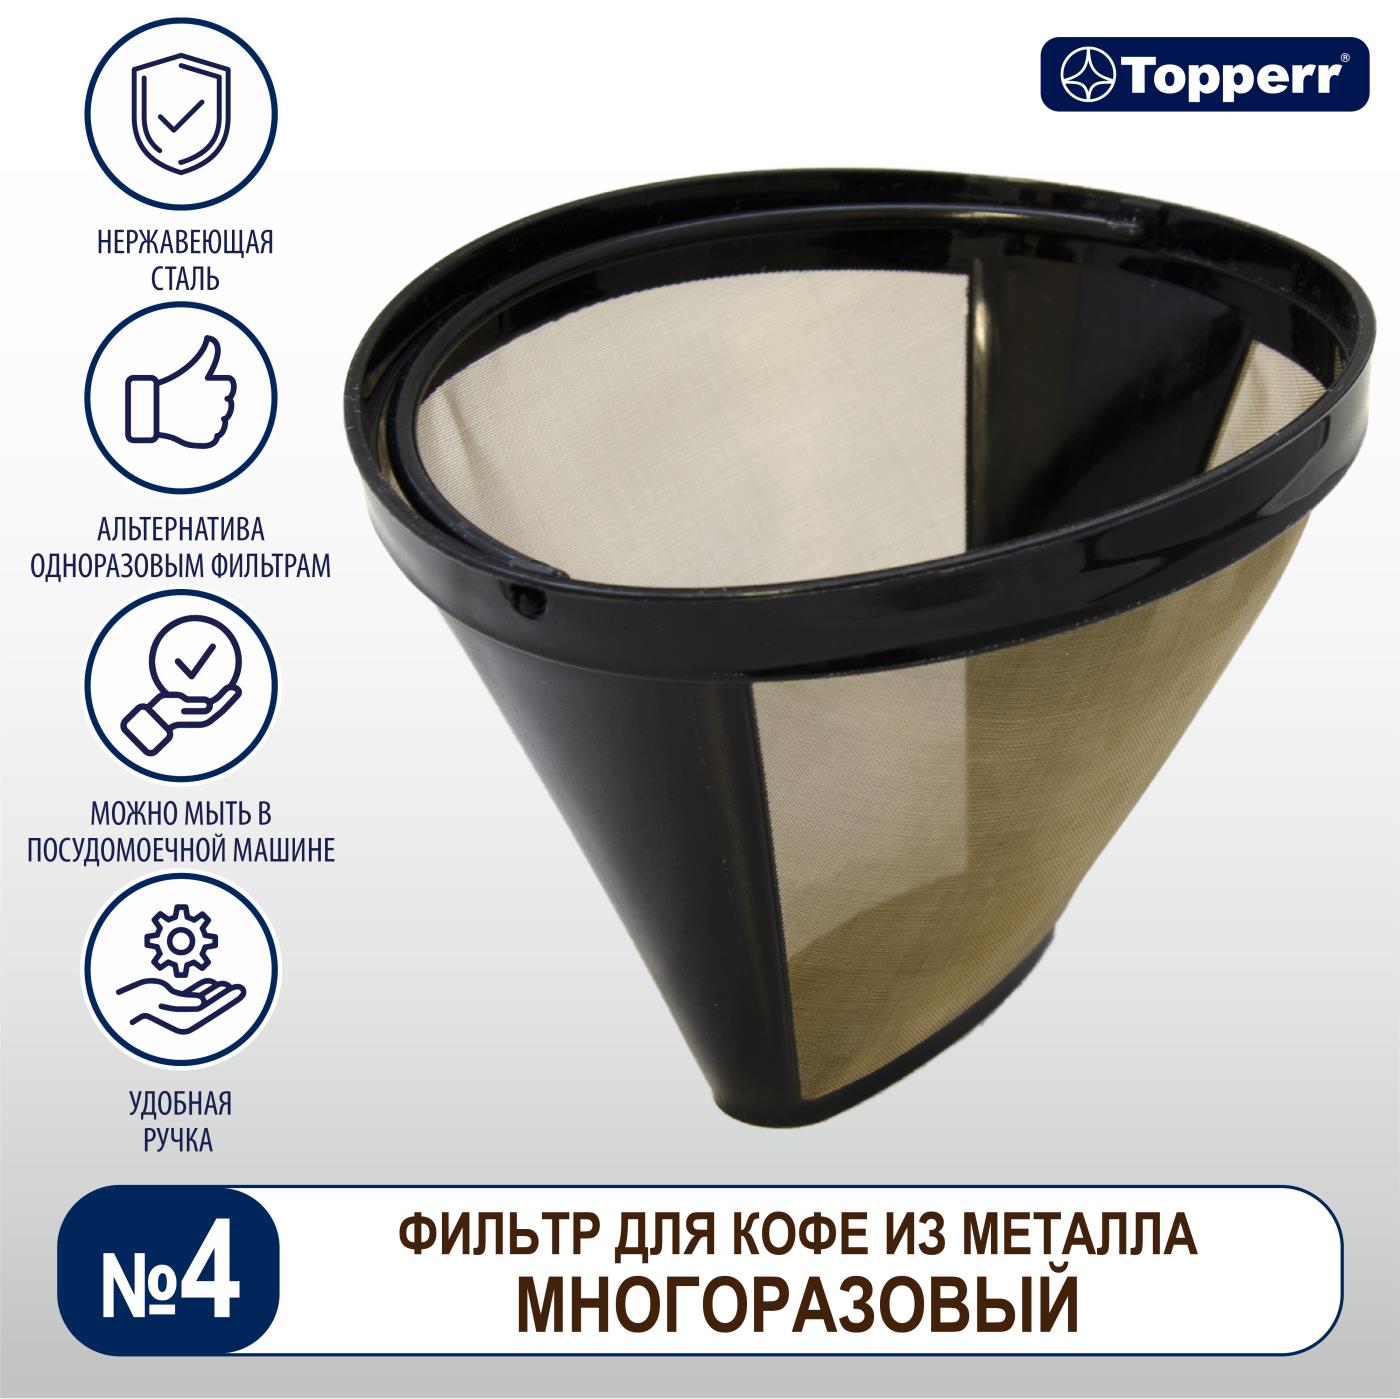 Фильтр для кофе №4 Topperr многоразовый (нержавеющая сталь) 3091